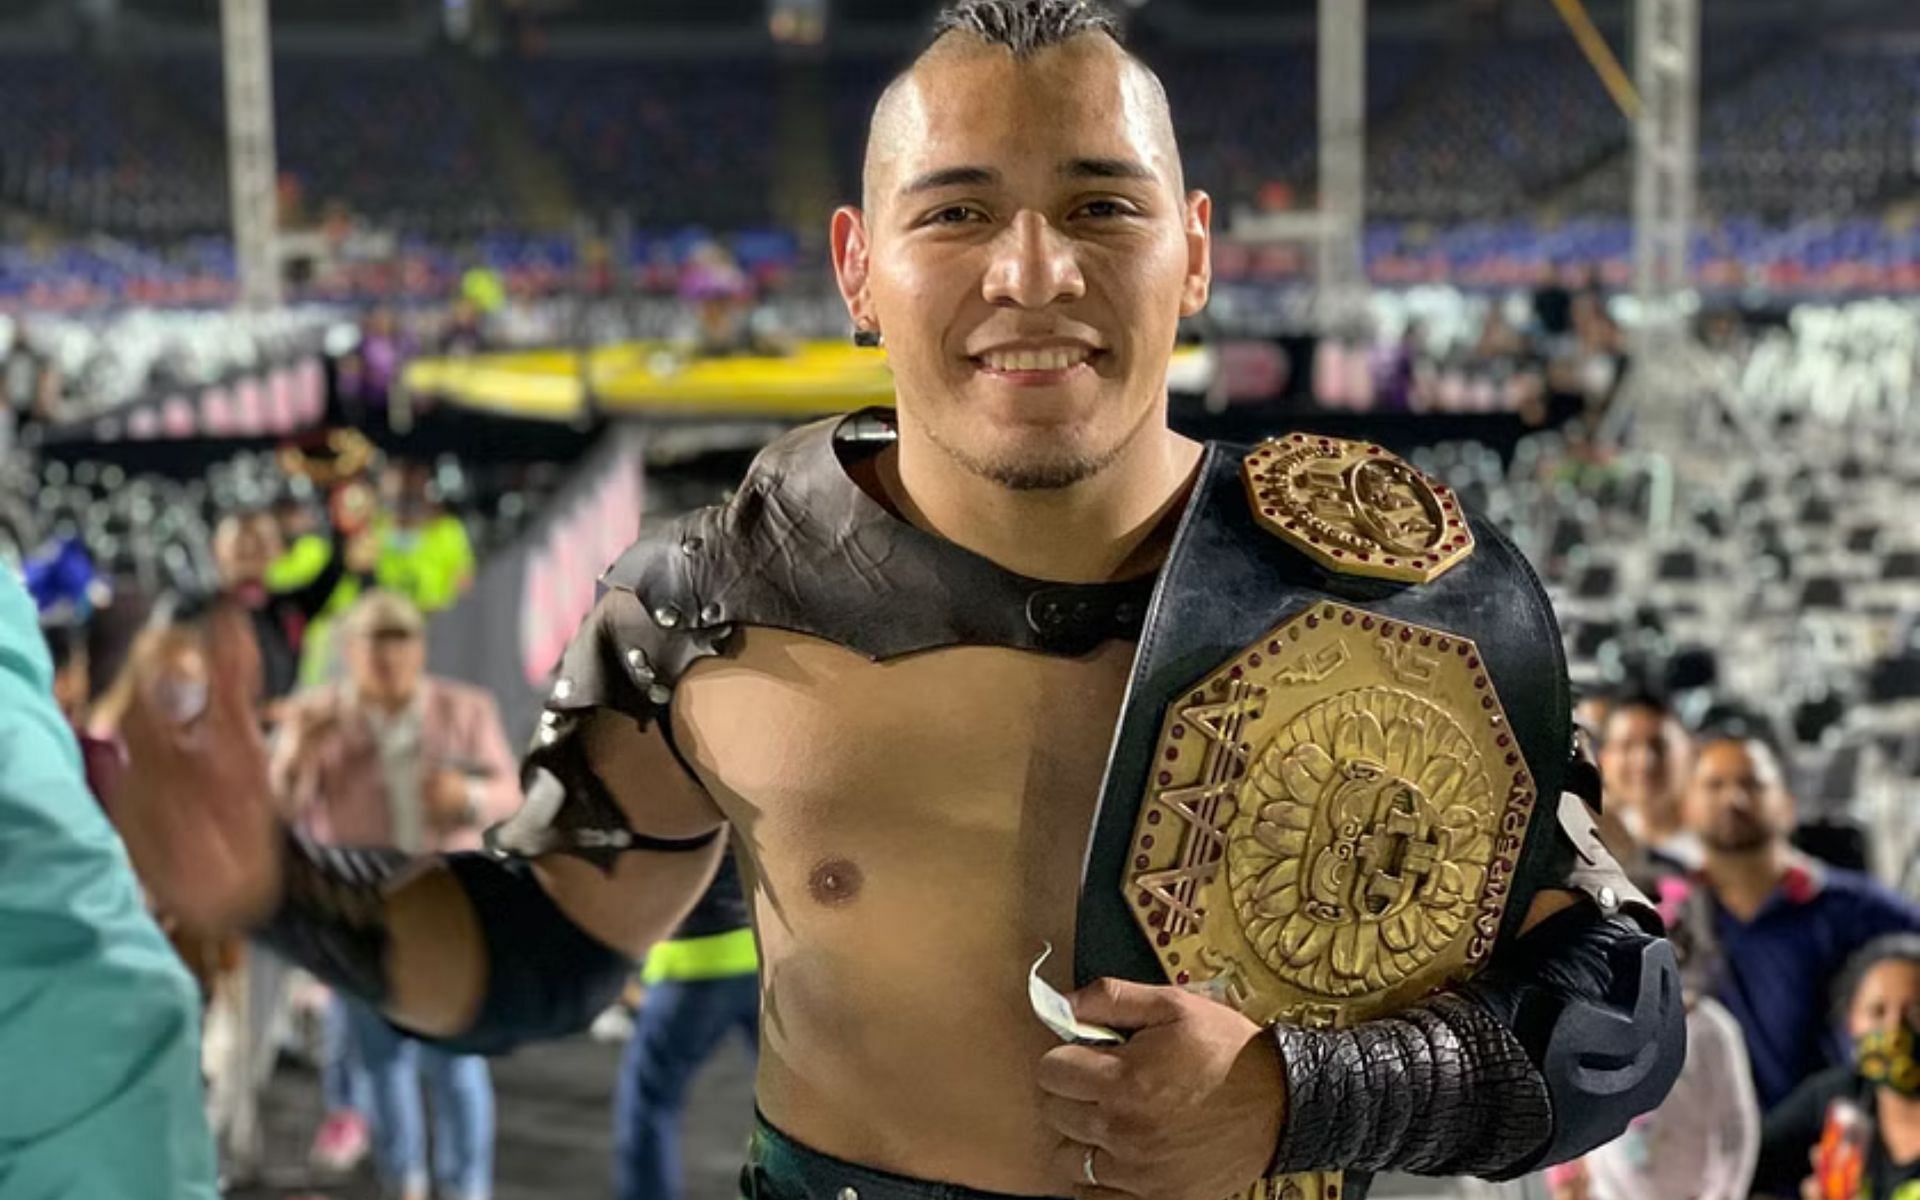 Current AAA Champion El Hijo del Vikingo